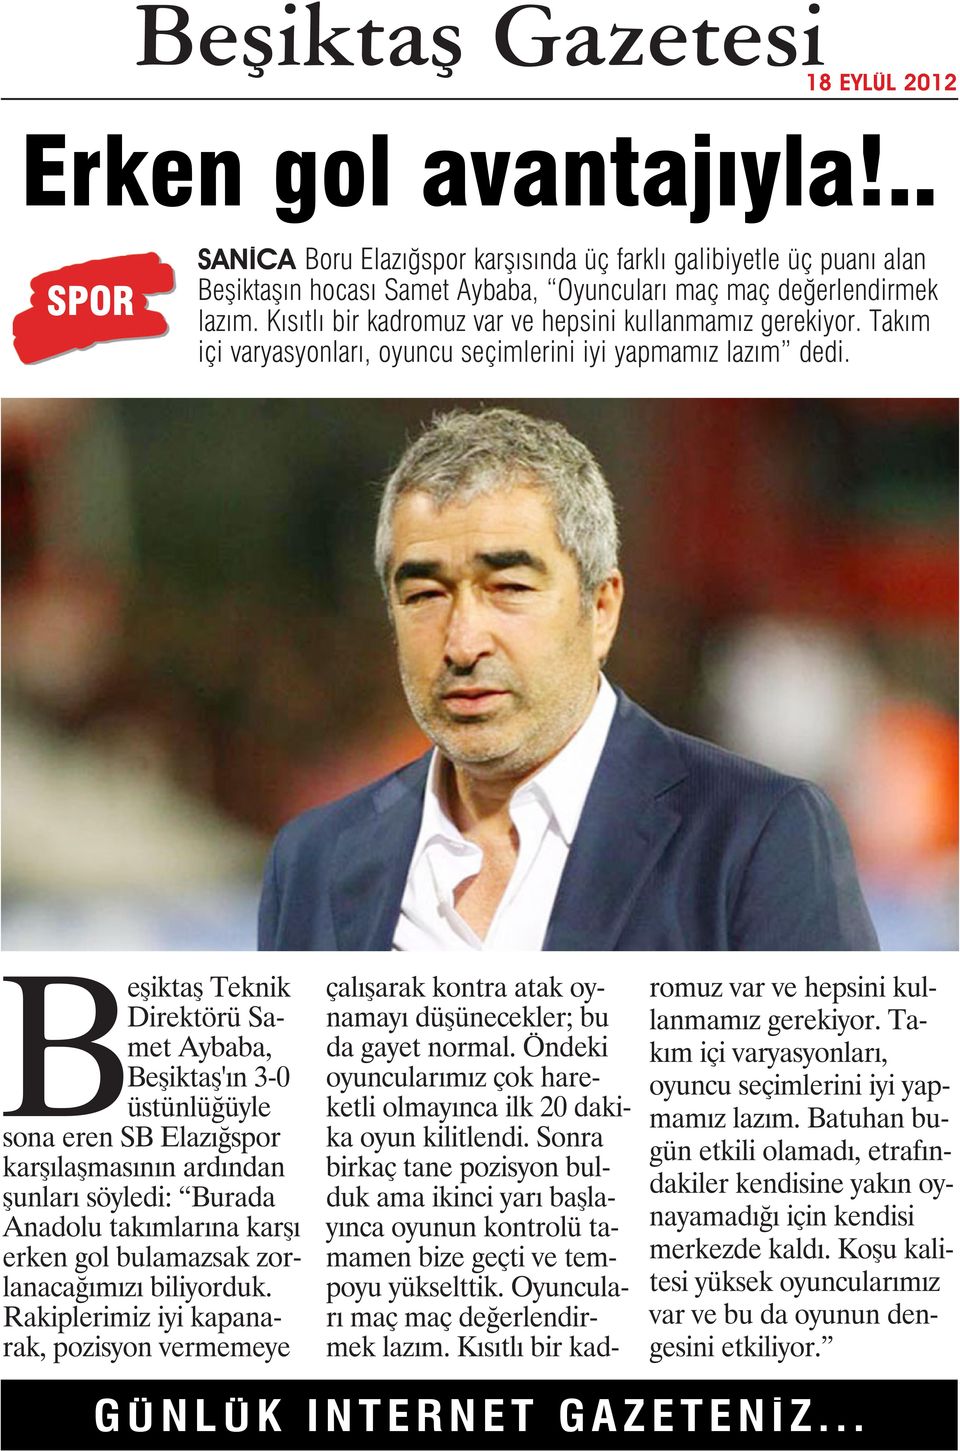 Beşiktaş Teknik Direktörü Samet Aybaba, Beşiktaş'ın 3-0 üstünlüğüyle sona eren SB Elazığspor karşılaşmasının ardından şunları söyledi: Burada Anadolu takımlarına karşı erken gol bulamazsak